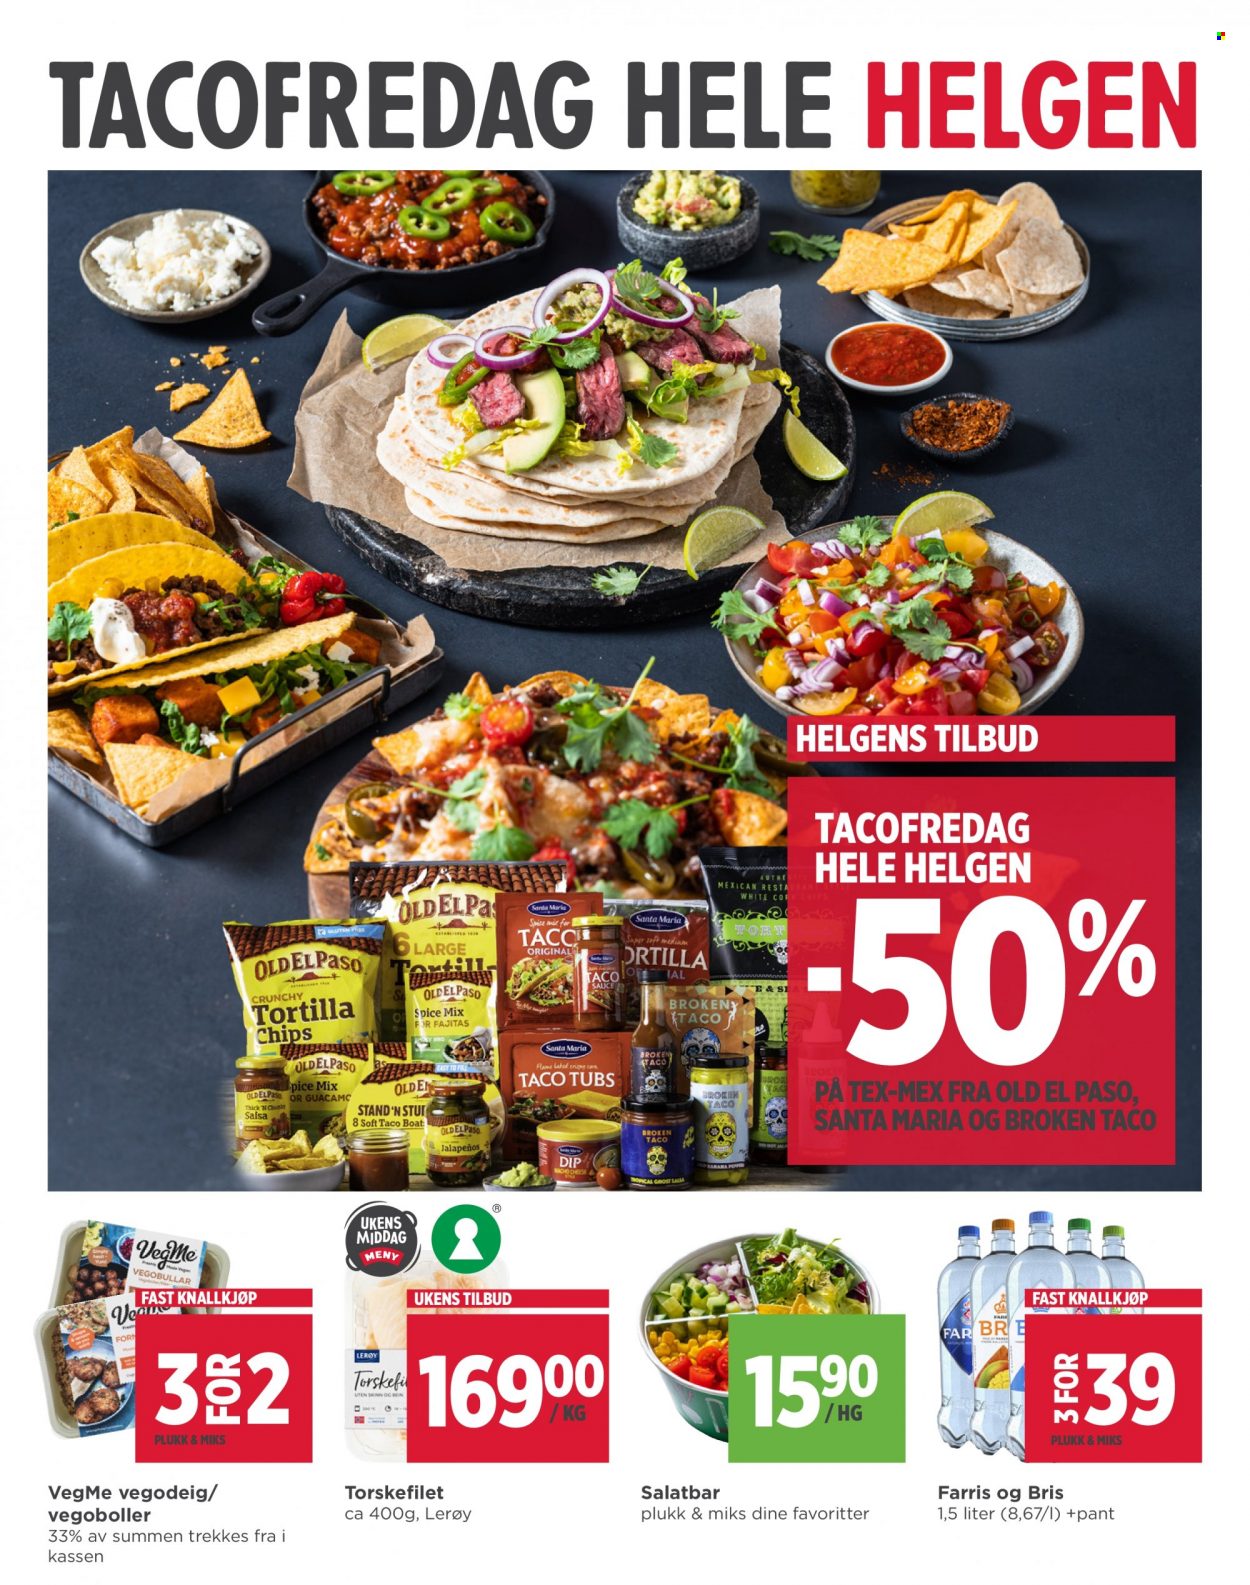 thumbnail - Kundeavis MENY - 4.11.2021 - 6.11.2021 - Produkter fra tilbudsaviser - tortilla, fajitas, chips, nachochips, Tortilla Chips, salsa. Side 9.